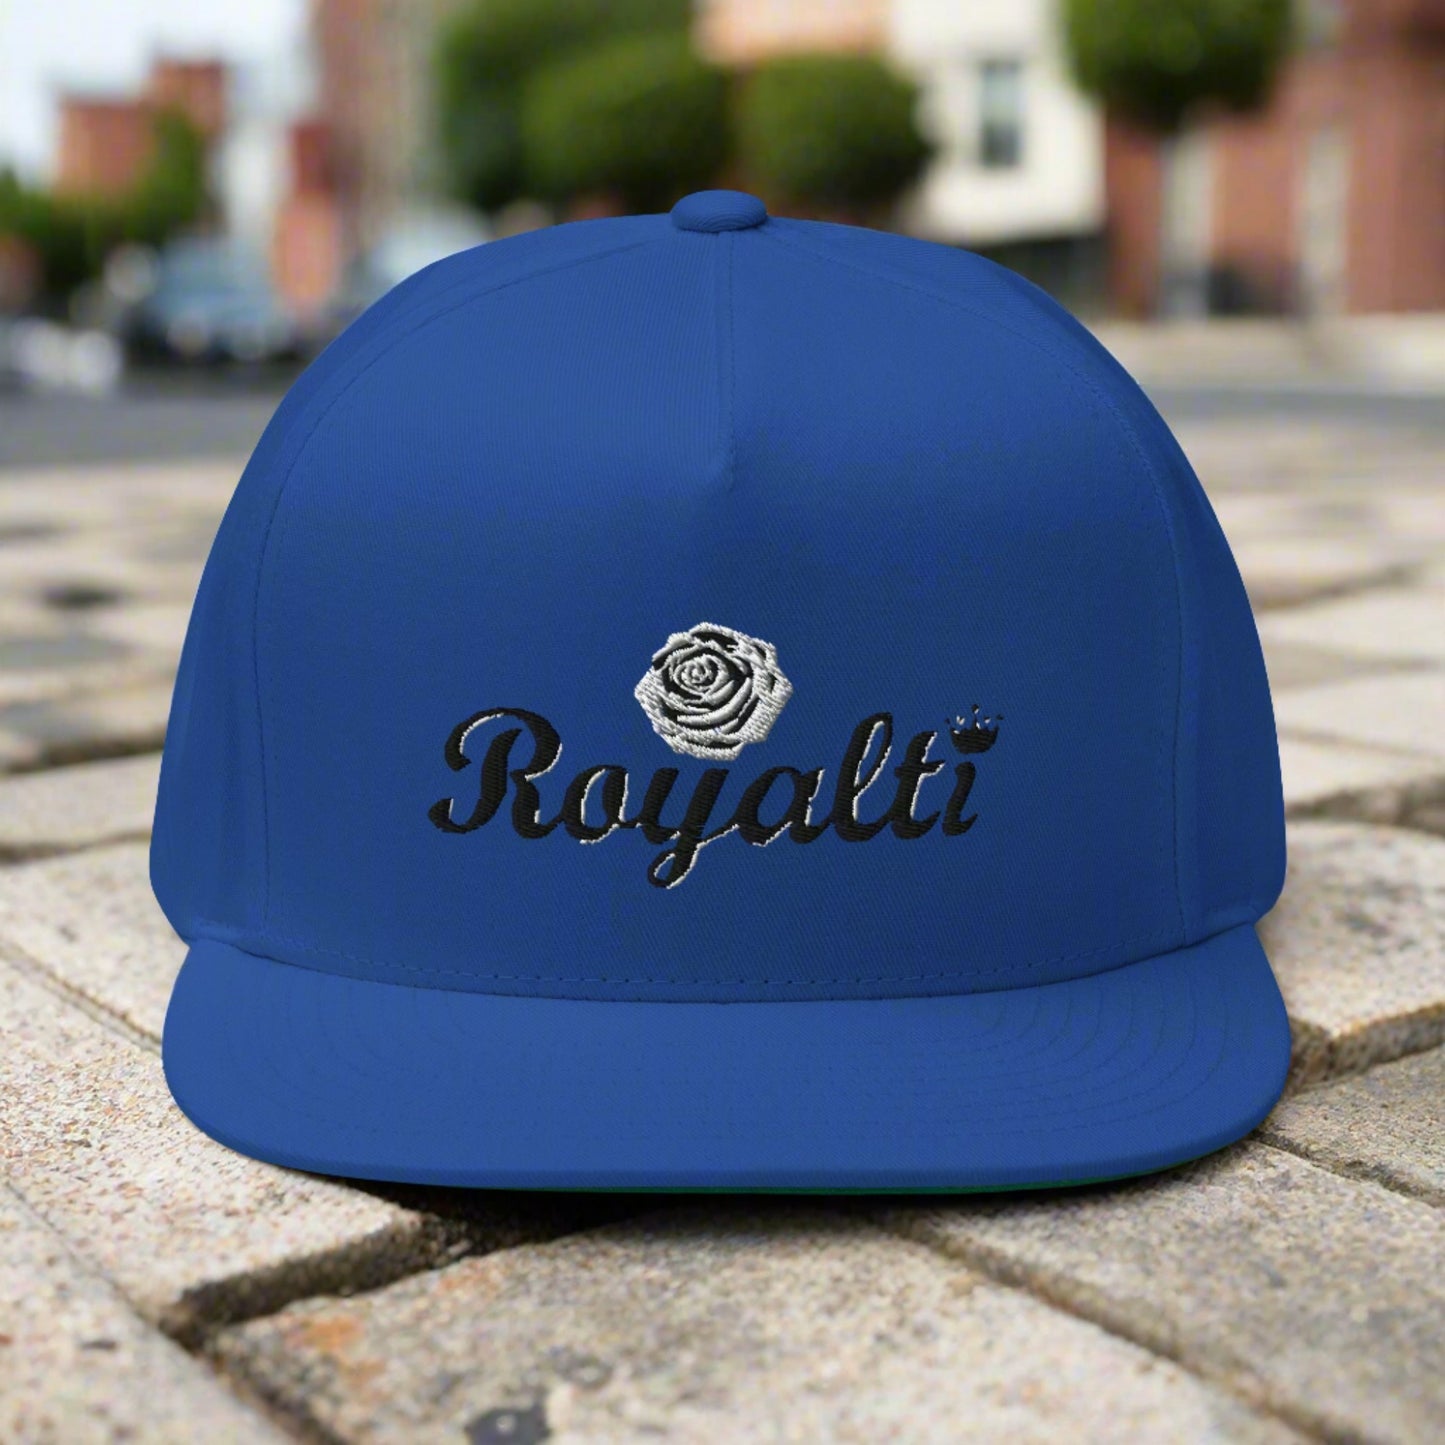 "Royalti" W.R. Flat Bill Cap